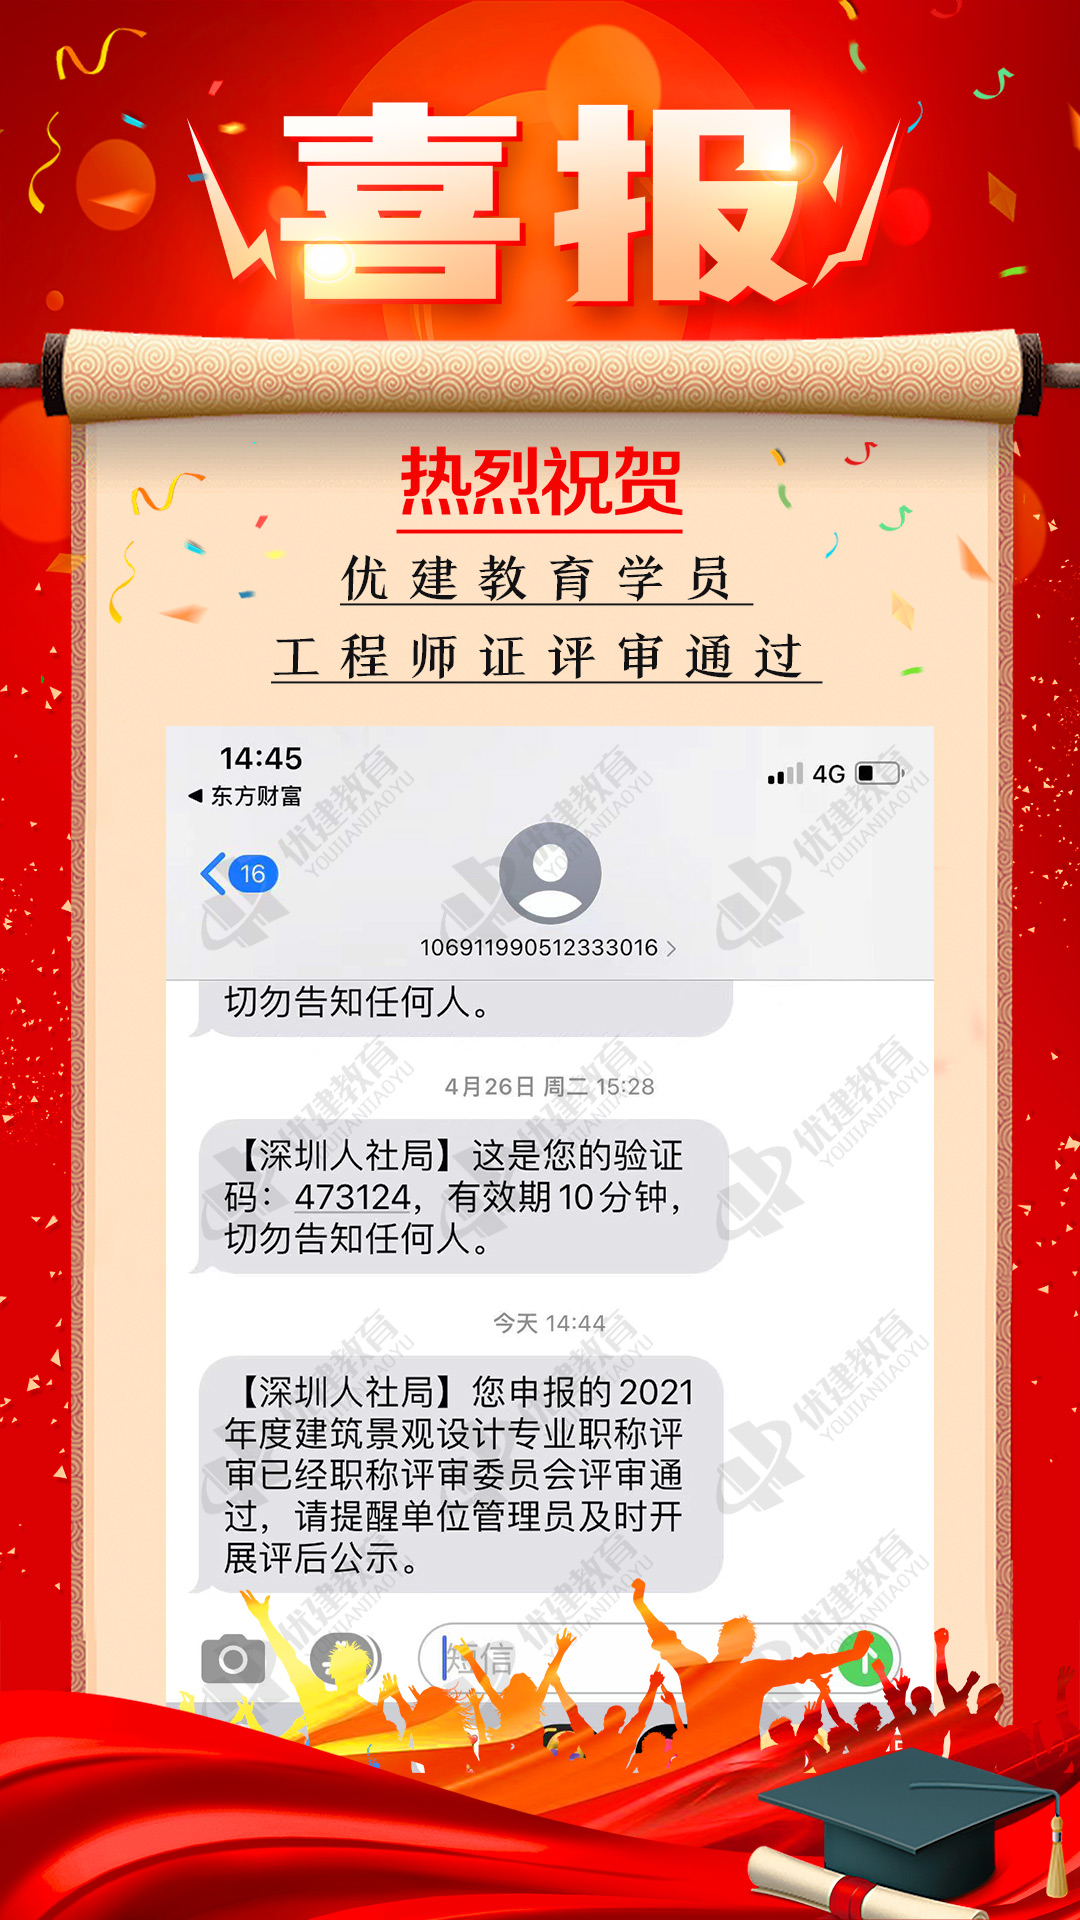 恭喜优建评审客户顺利通过深圳人社局的职称评审